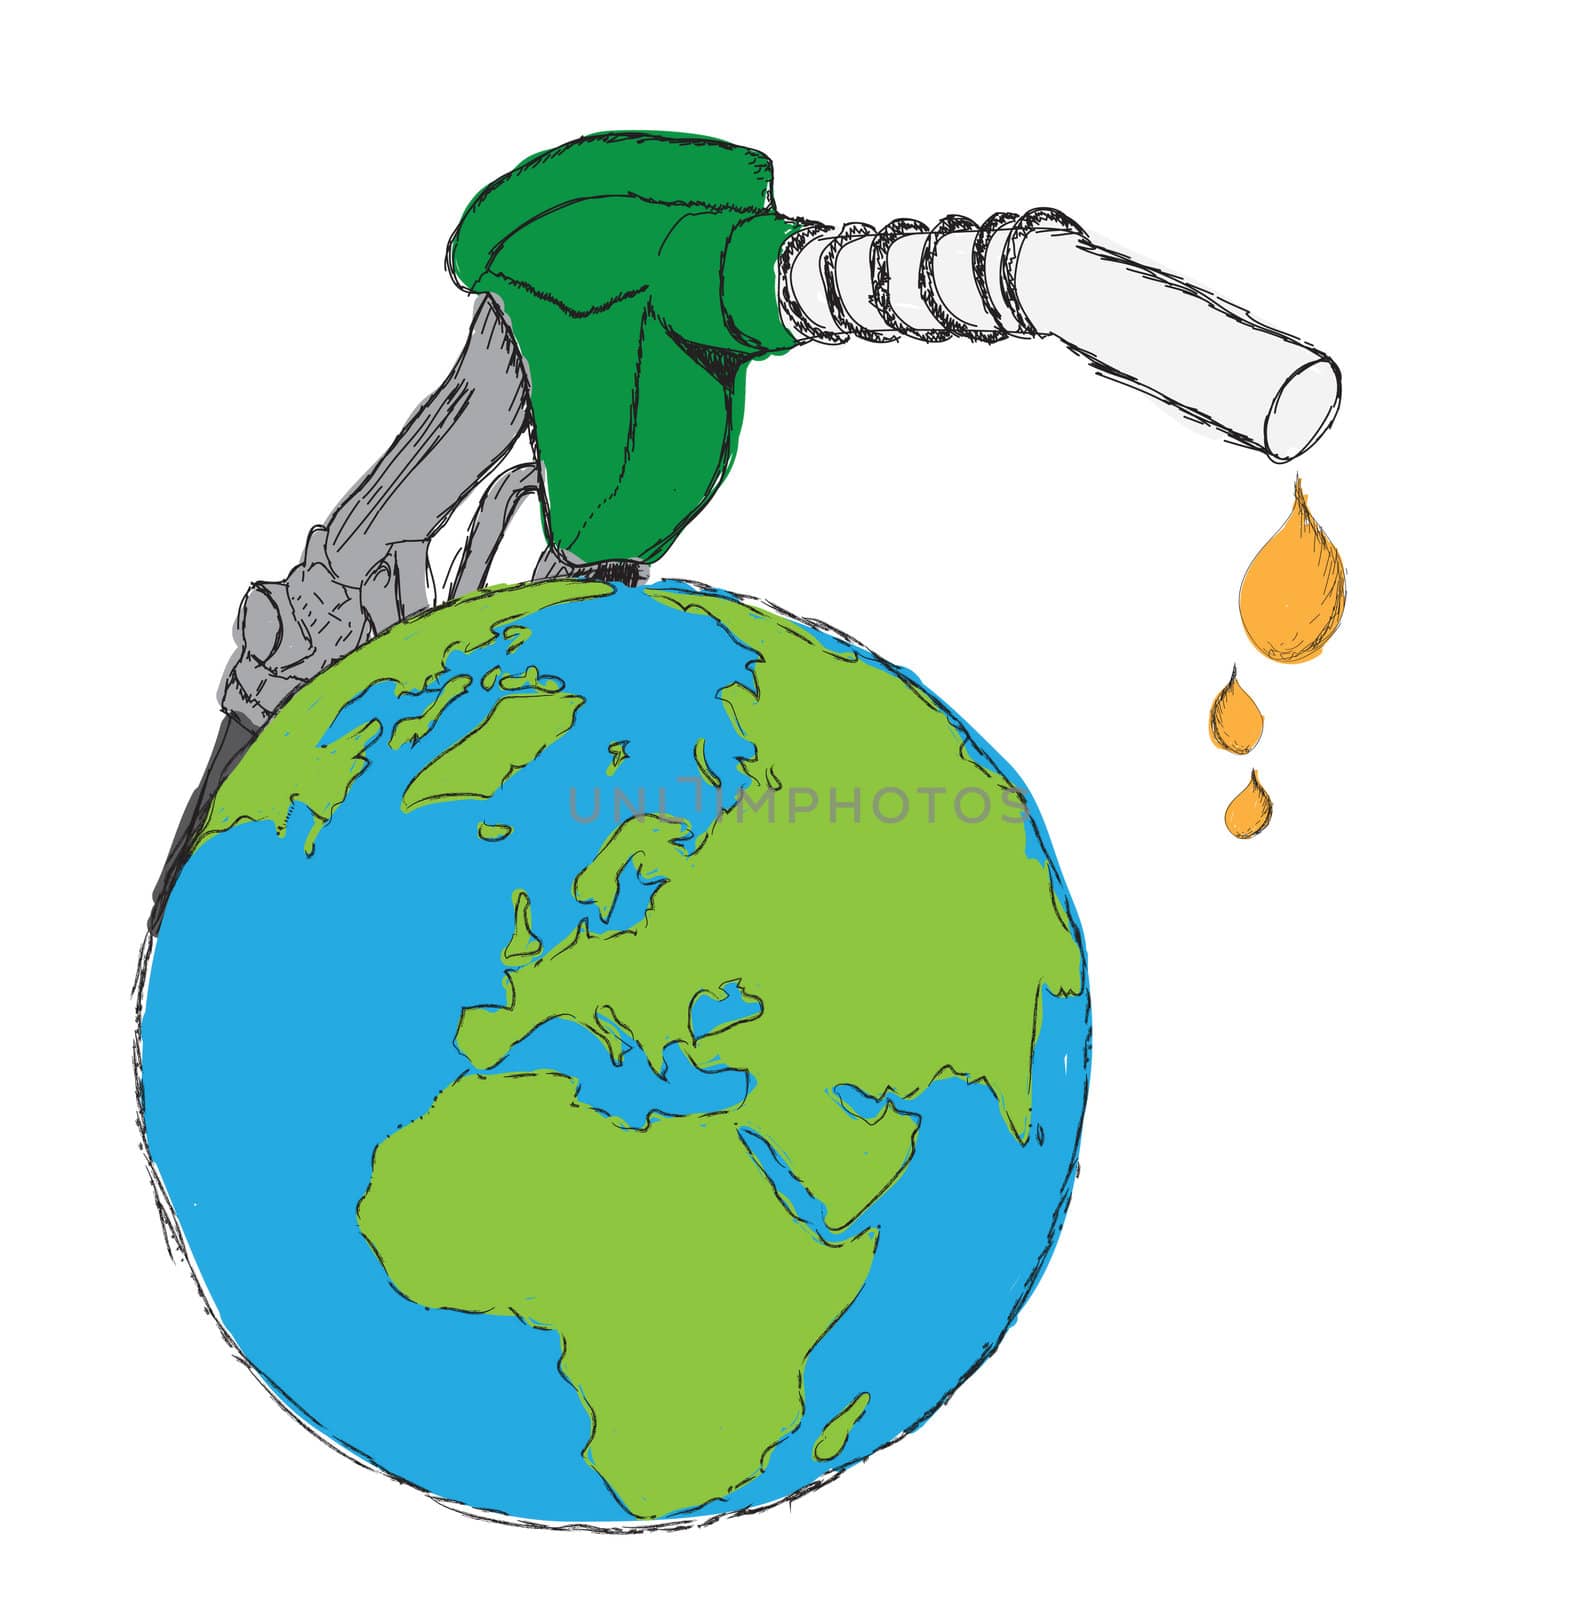 earth as gas pump by rufous